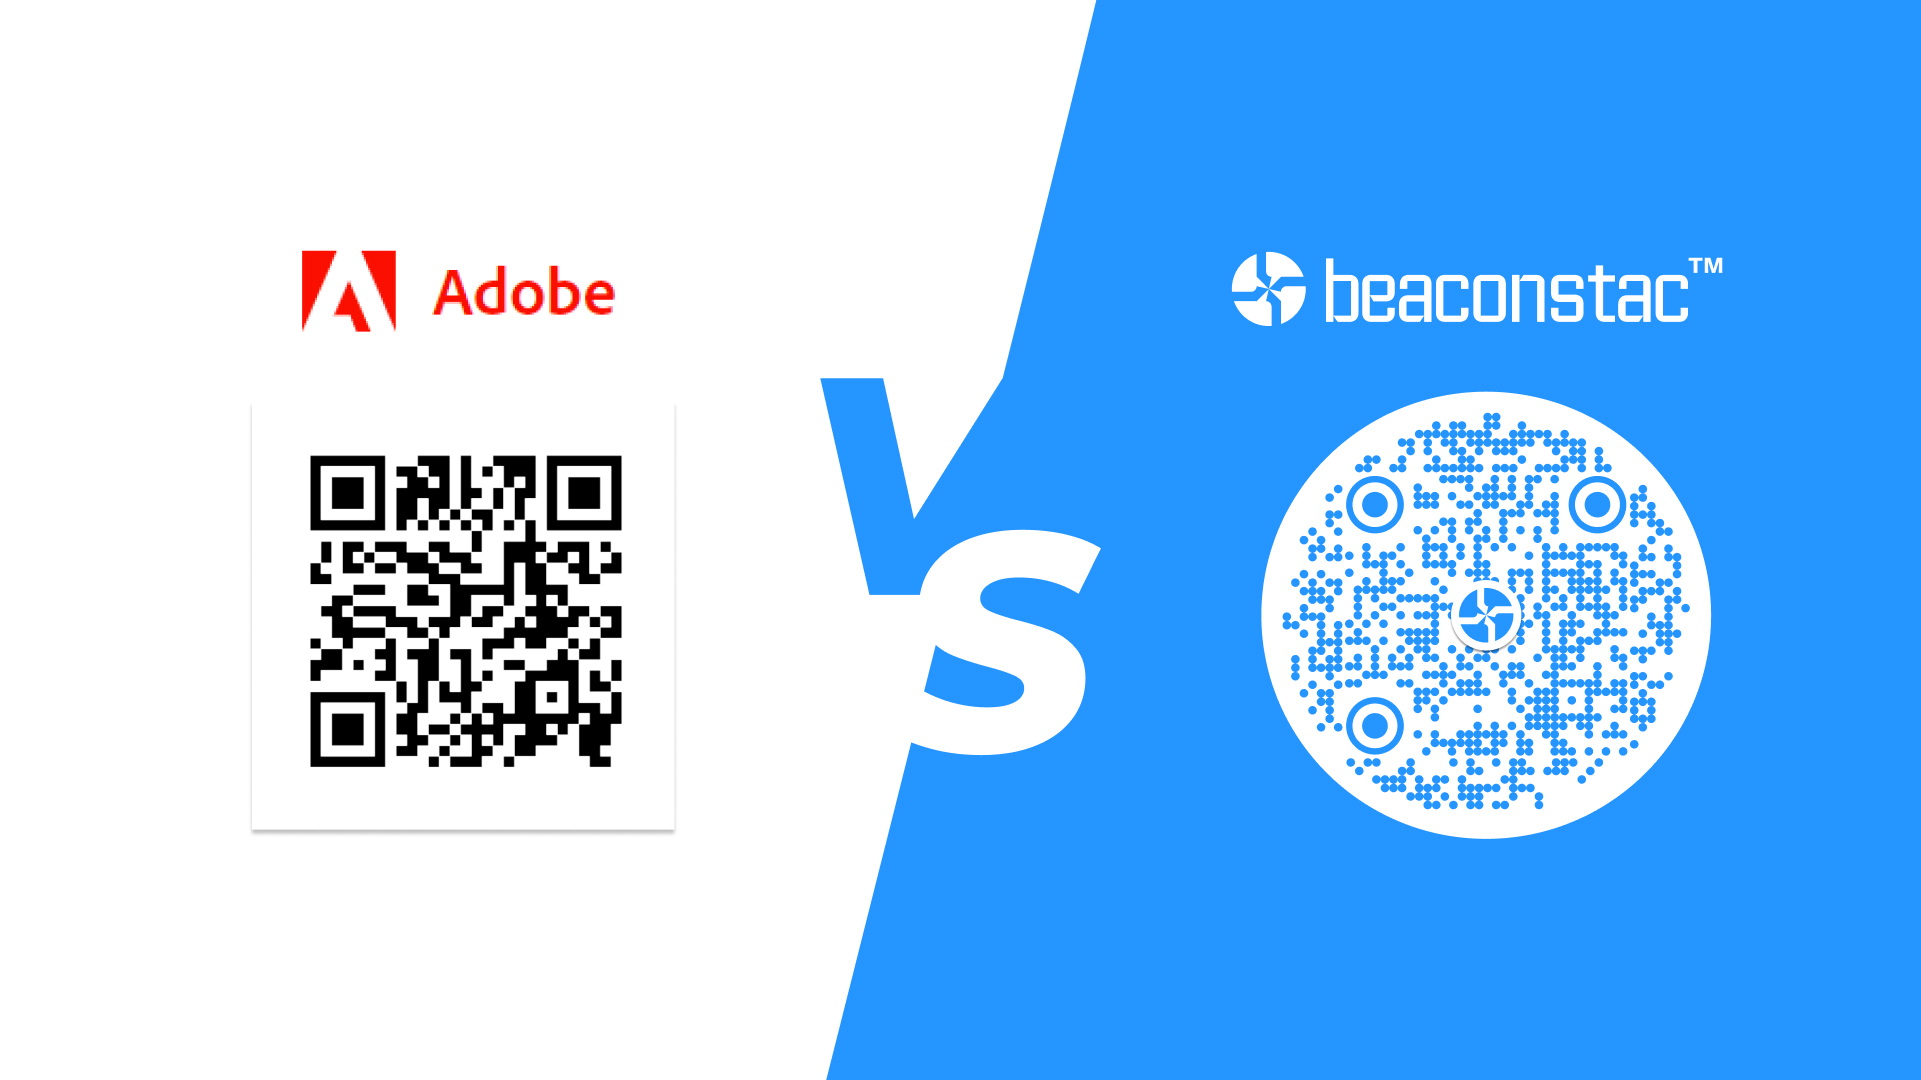 Adobe QR Codes vs Beaconstac QR Codes